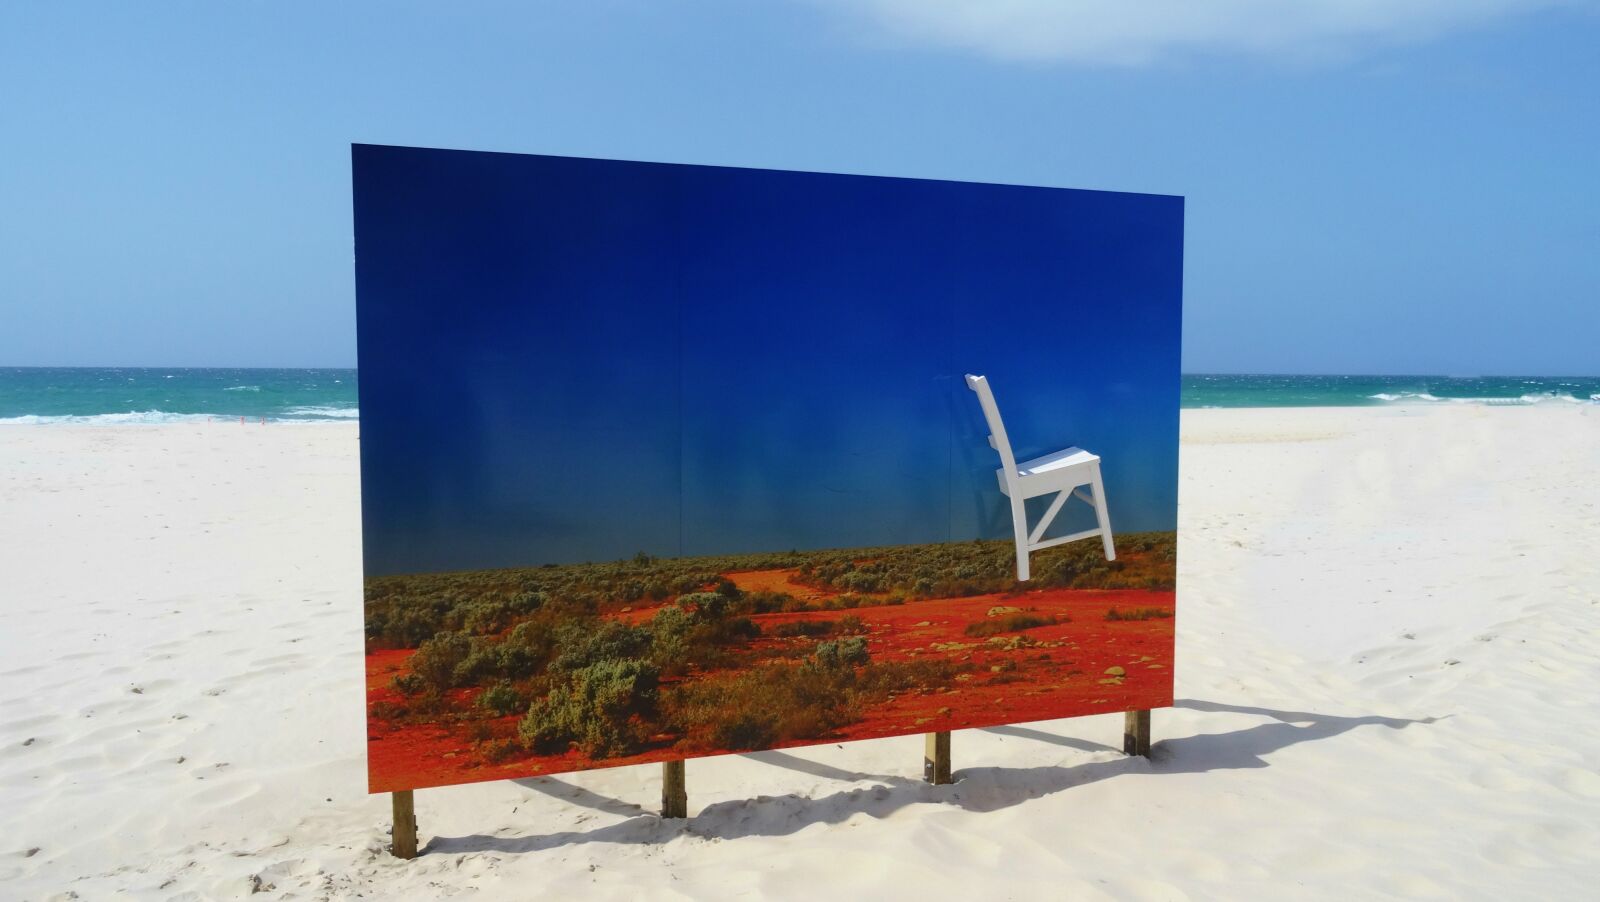 Sony Cyber-shot DSC-HX50V sample photo. Australian art, beach, sun photography